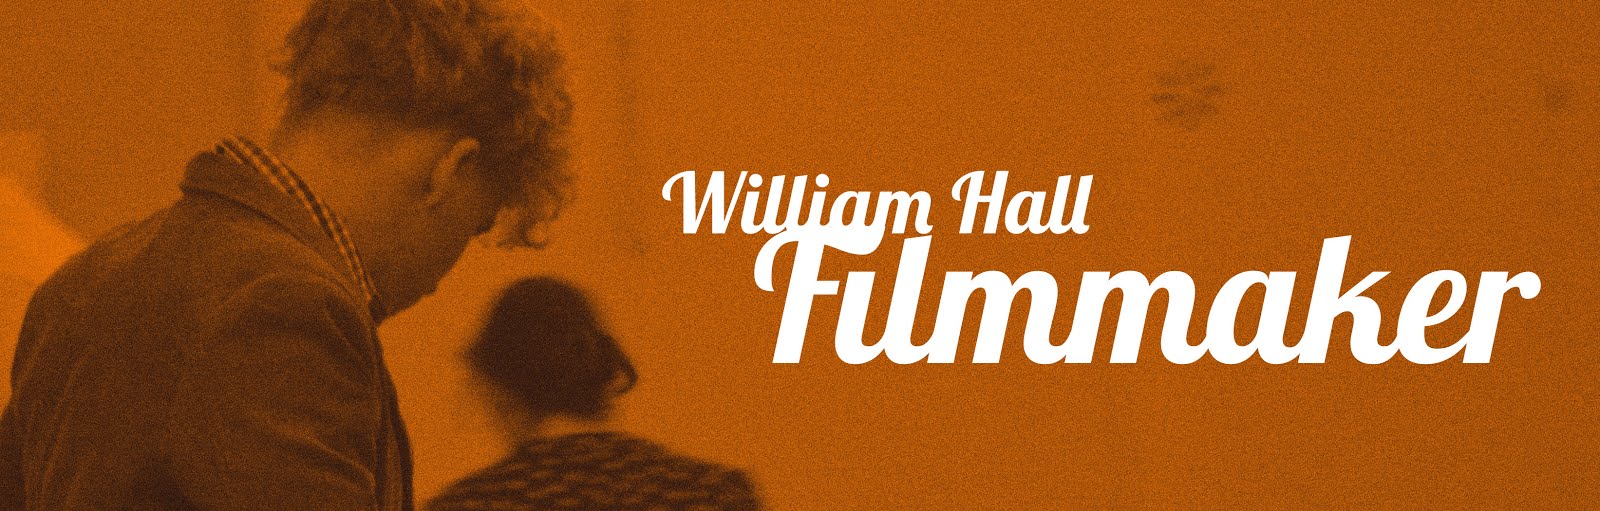 William Hall - Filmmaker